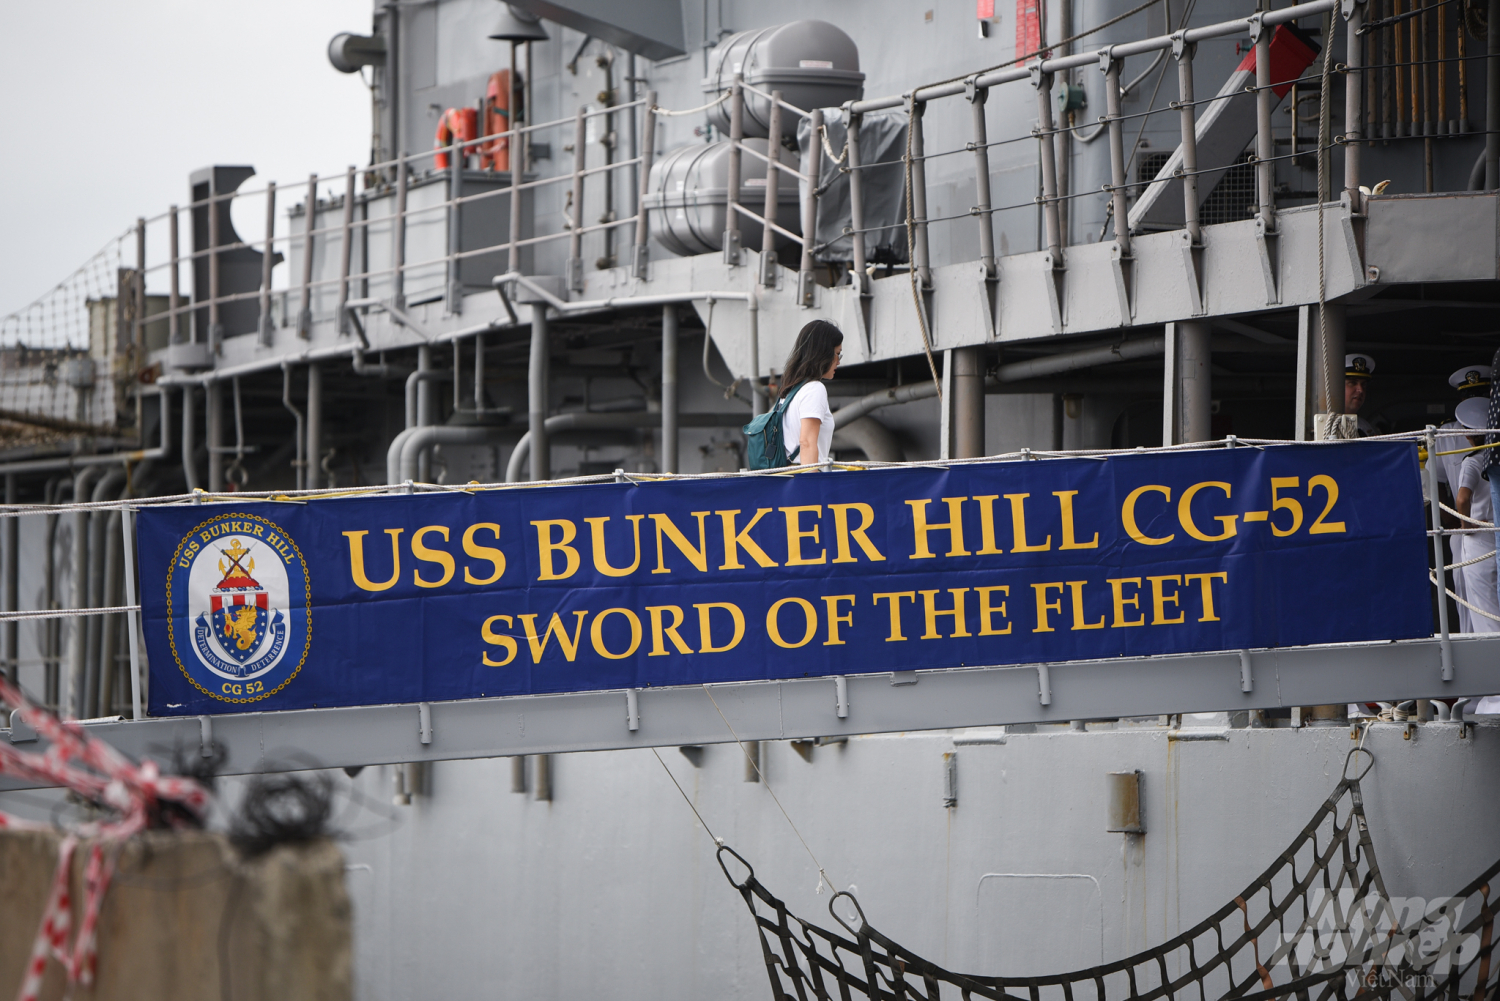 Tuần dương hạm USS Bunker Hill (CG-52) đang neo đậu tại cảng Tiên Sa là tàu mang tên lửa dẫn đường thuộc lớp Ticonderoga của Hải quân Mỹ. Ảnh: Tùng Đinh.